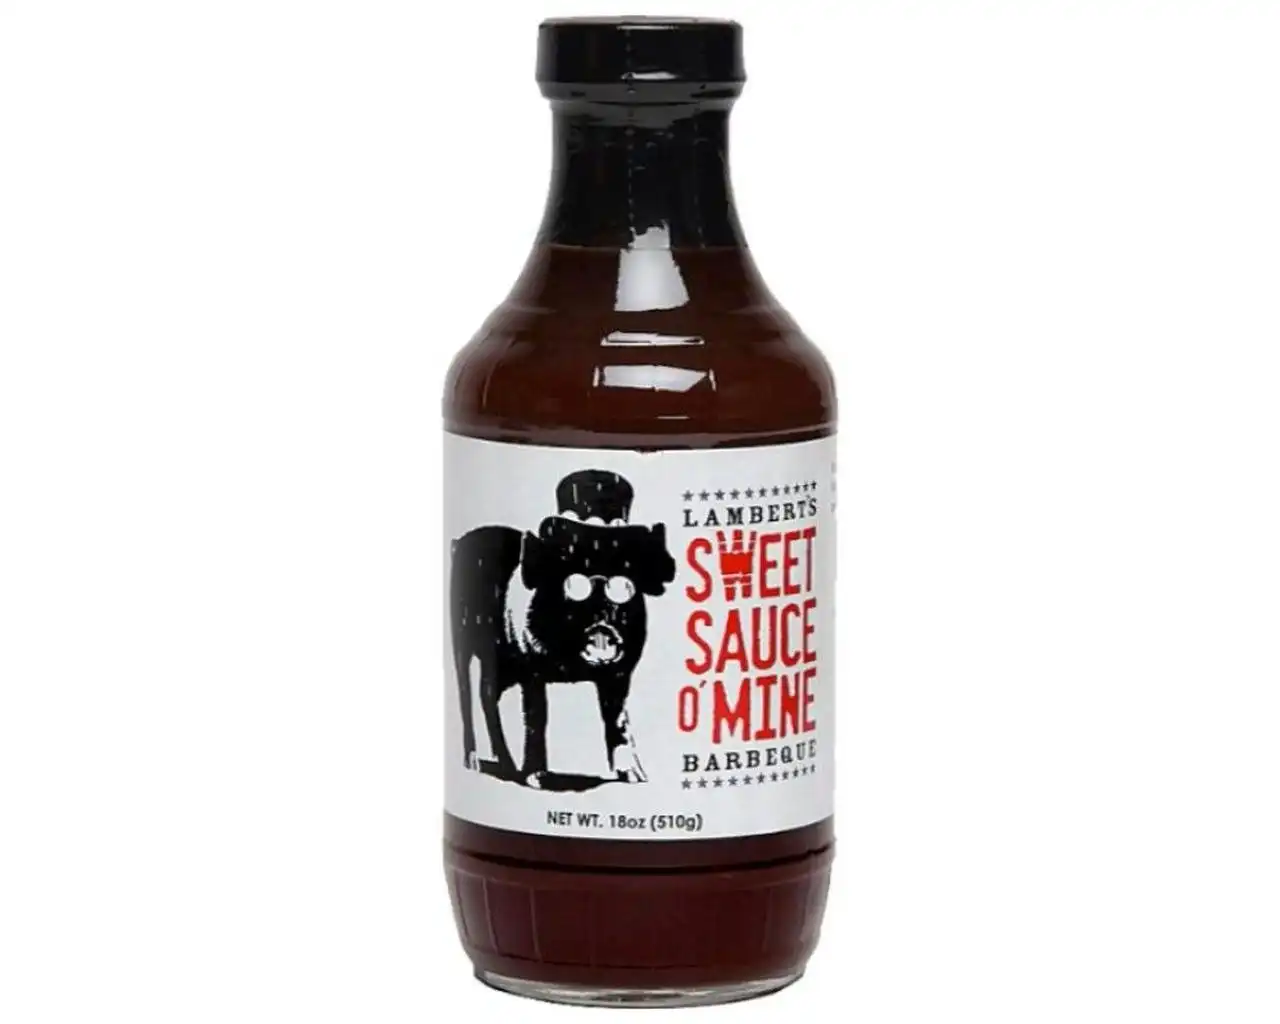 Sweet Sauce O'Mine